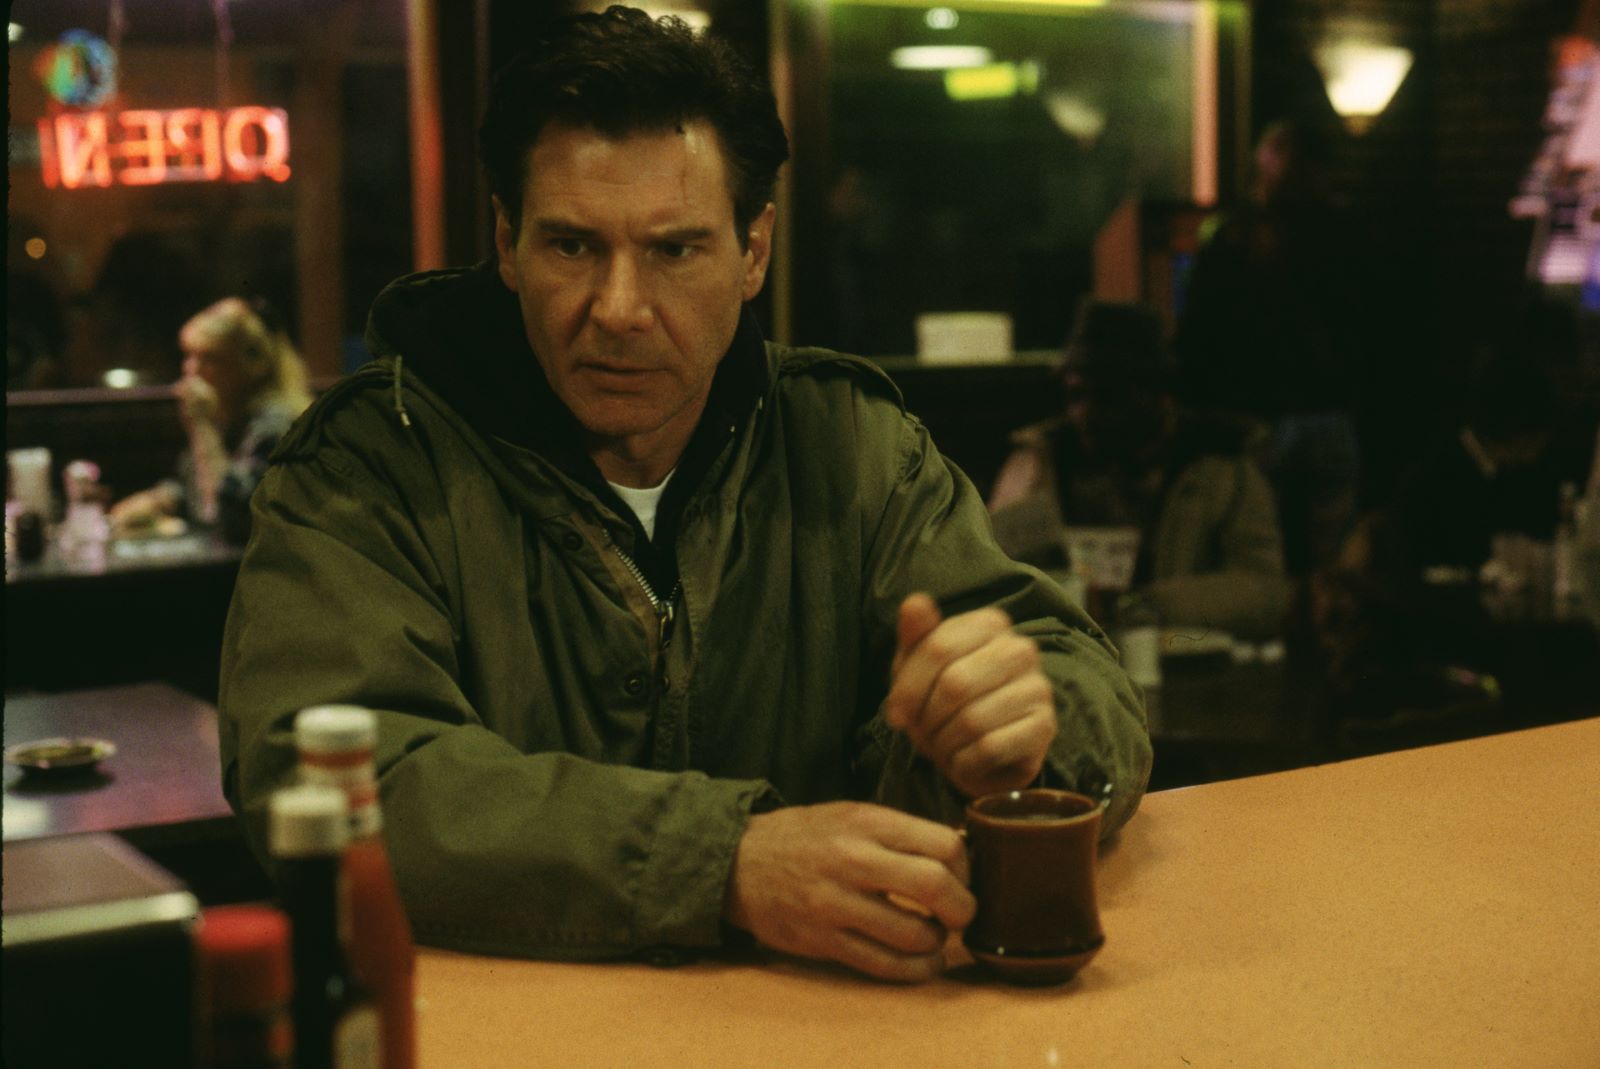 Kadr z filmu "Ścigany". Mężczyzna (Harisson Ford) siedzi przy stole i trzyma kubek.